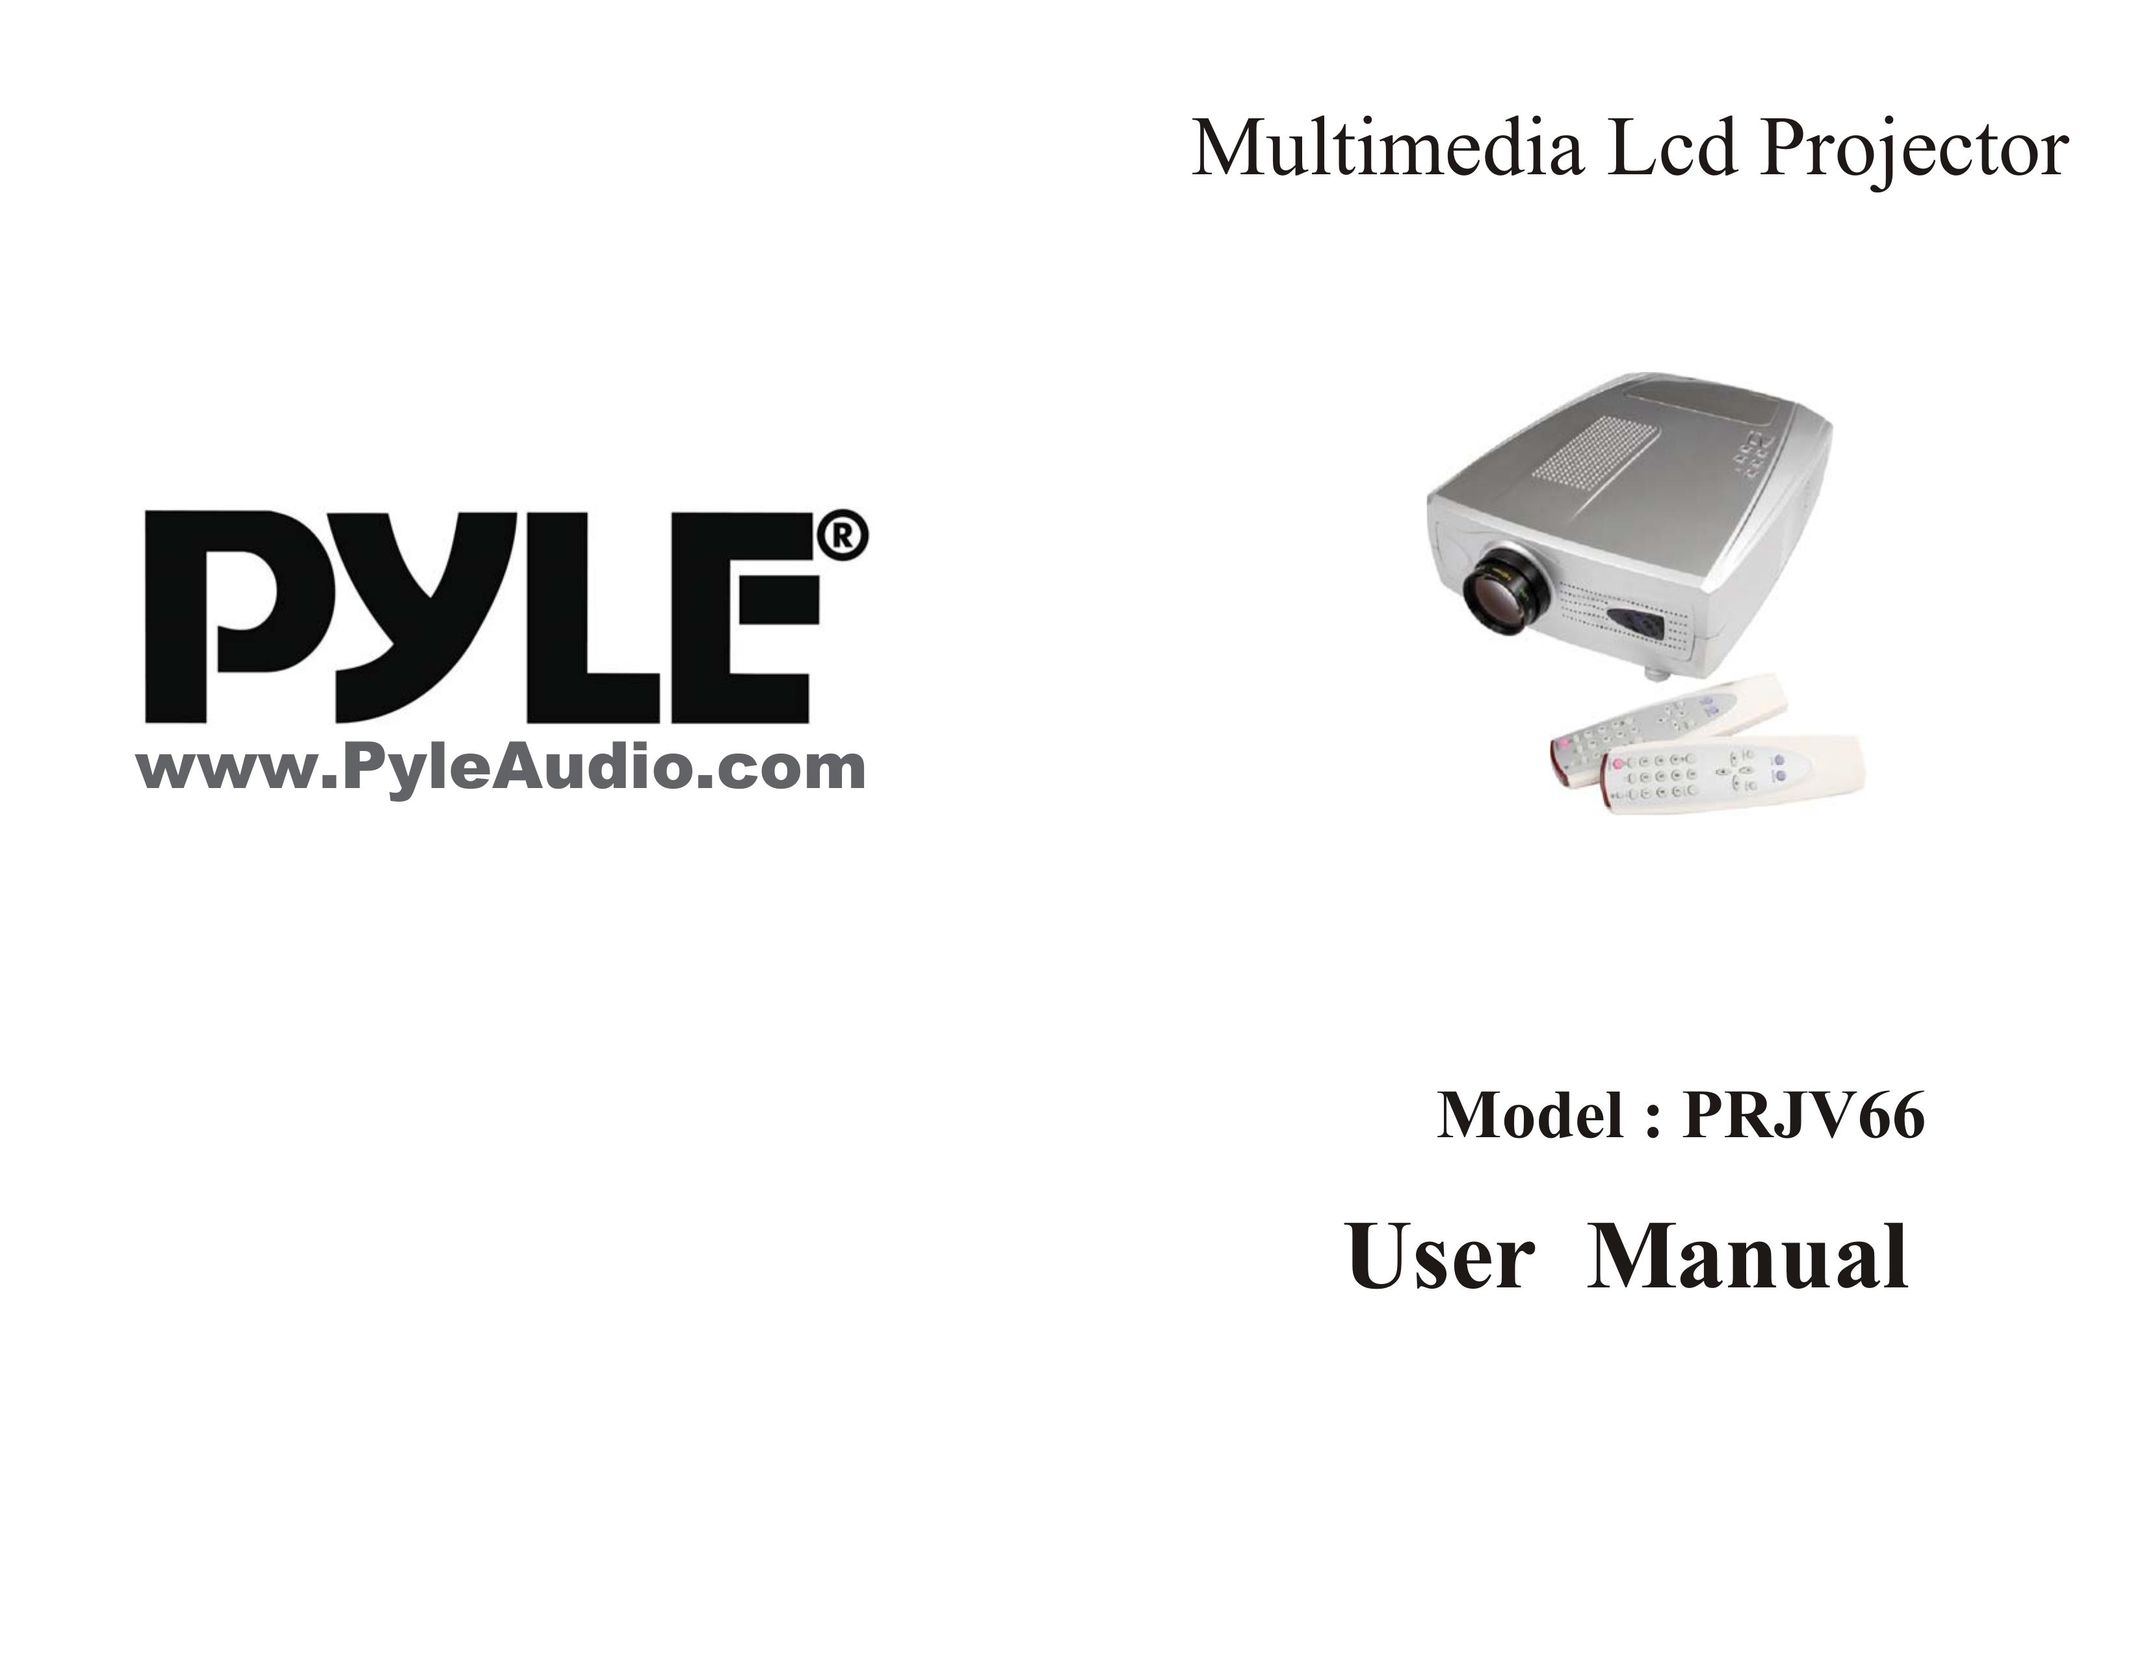 PYLE Audio PRJV66 Projector User Manual